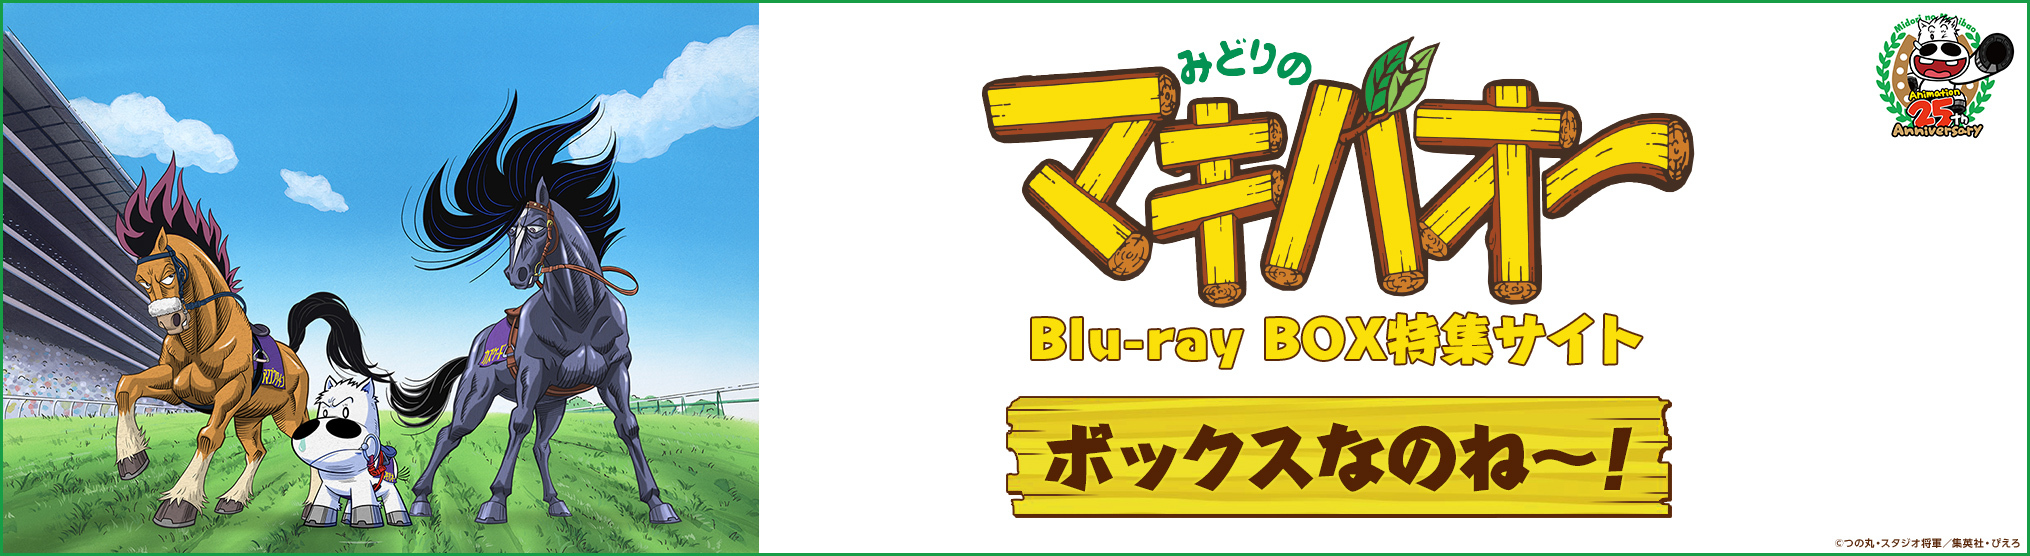 『みどりのマキバオー』Blu-ray BOX特集サイト「ボックスなのね～！」